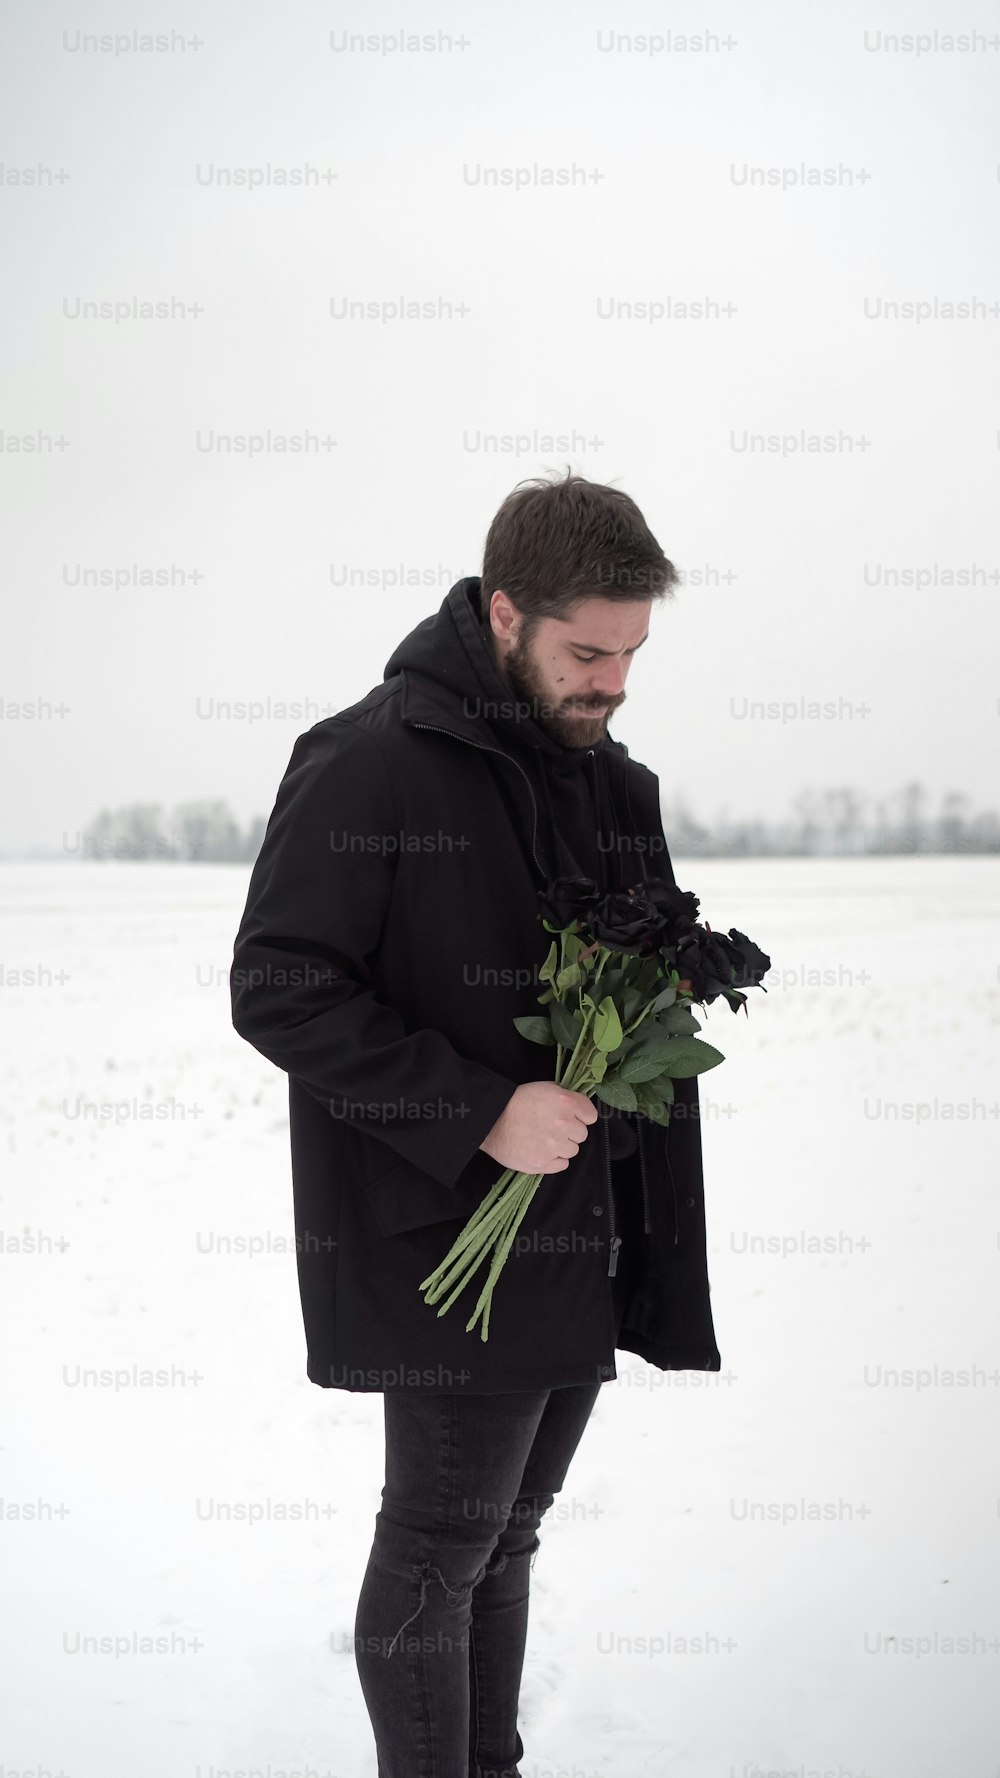 Ein Mann steht im Schnee und hält einen Blumenstrauß in der Hand